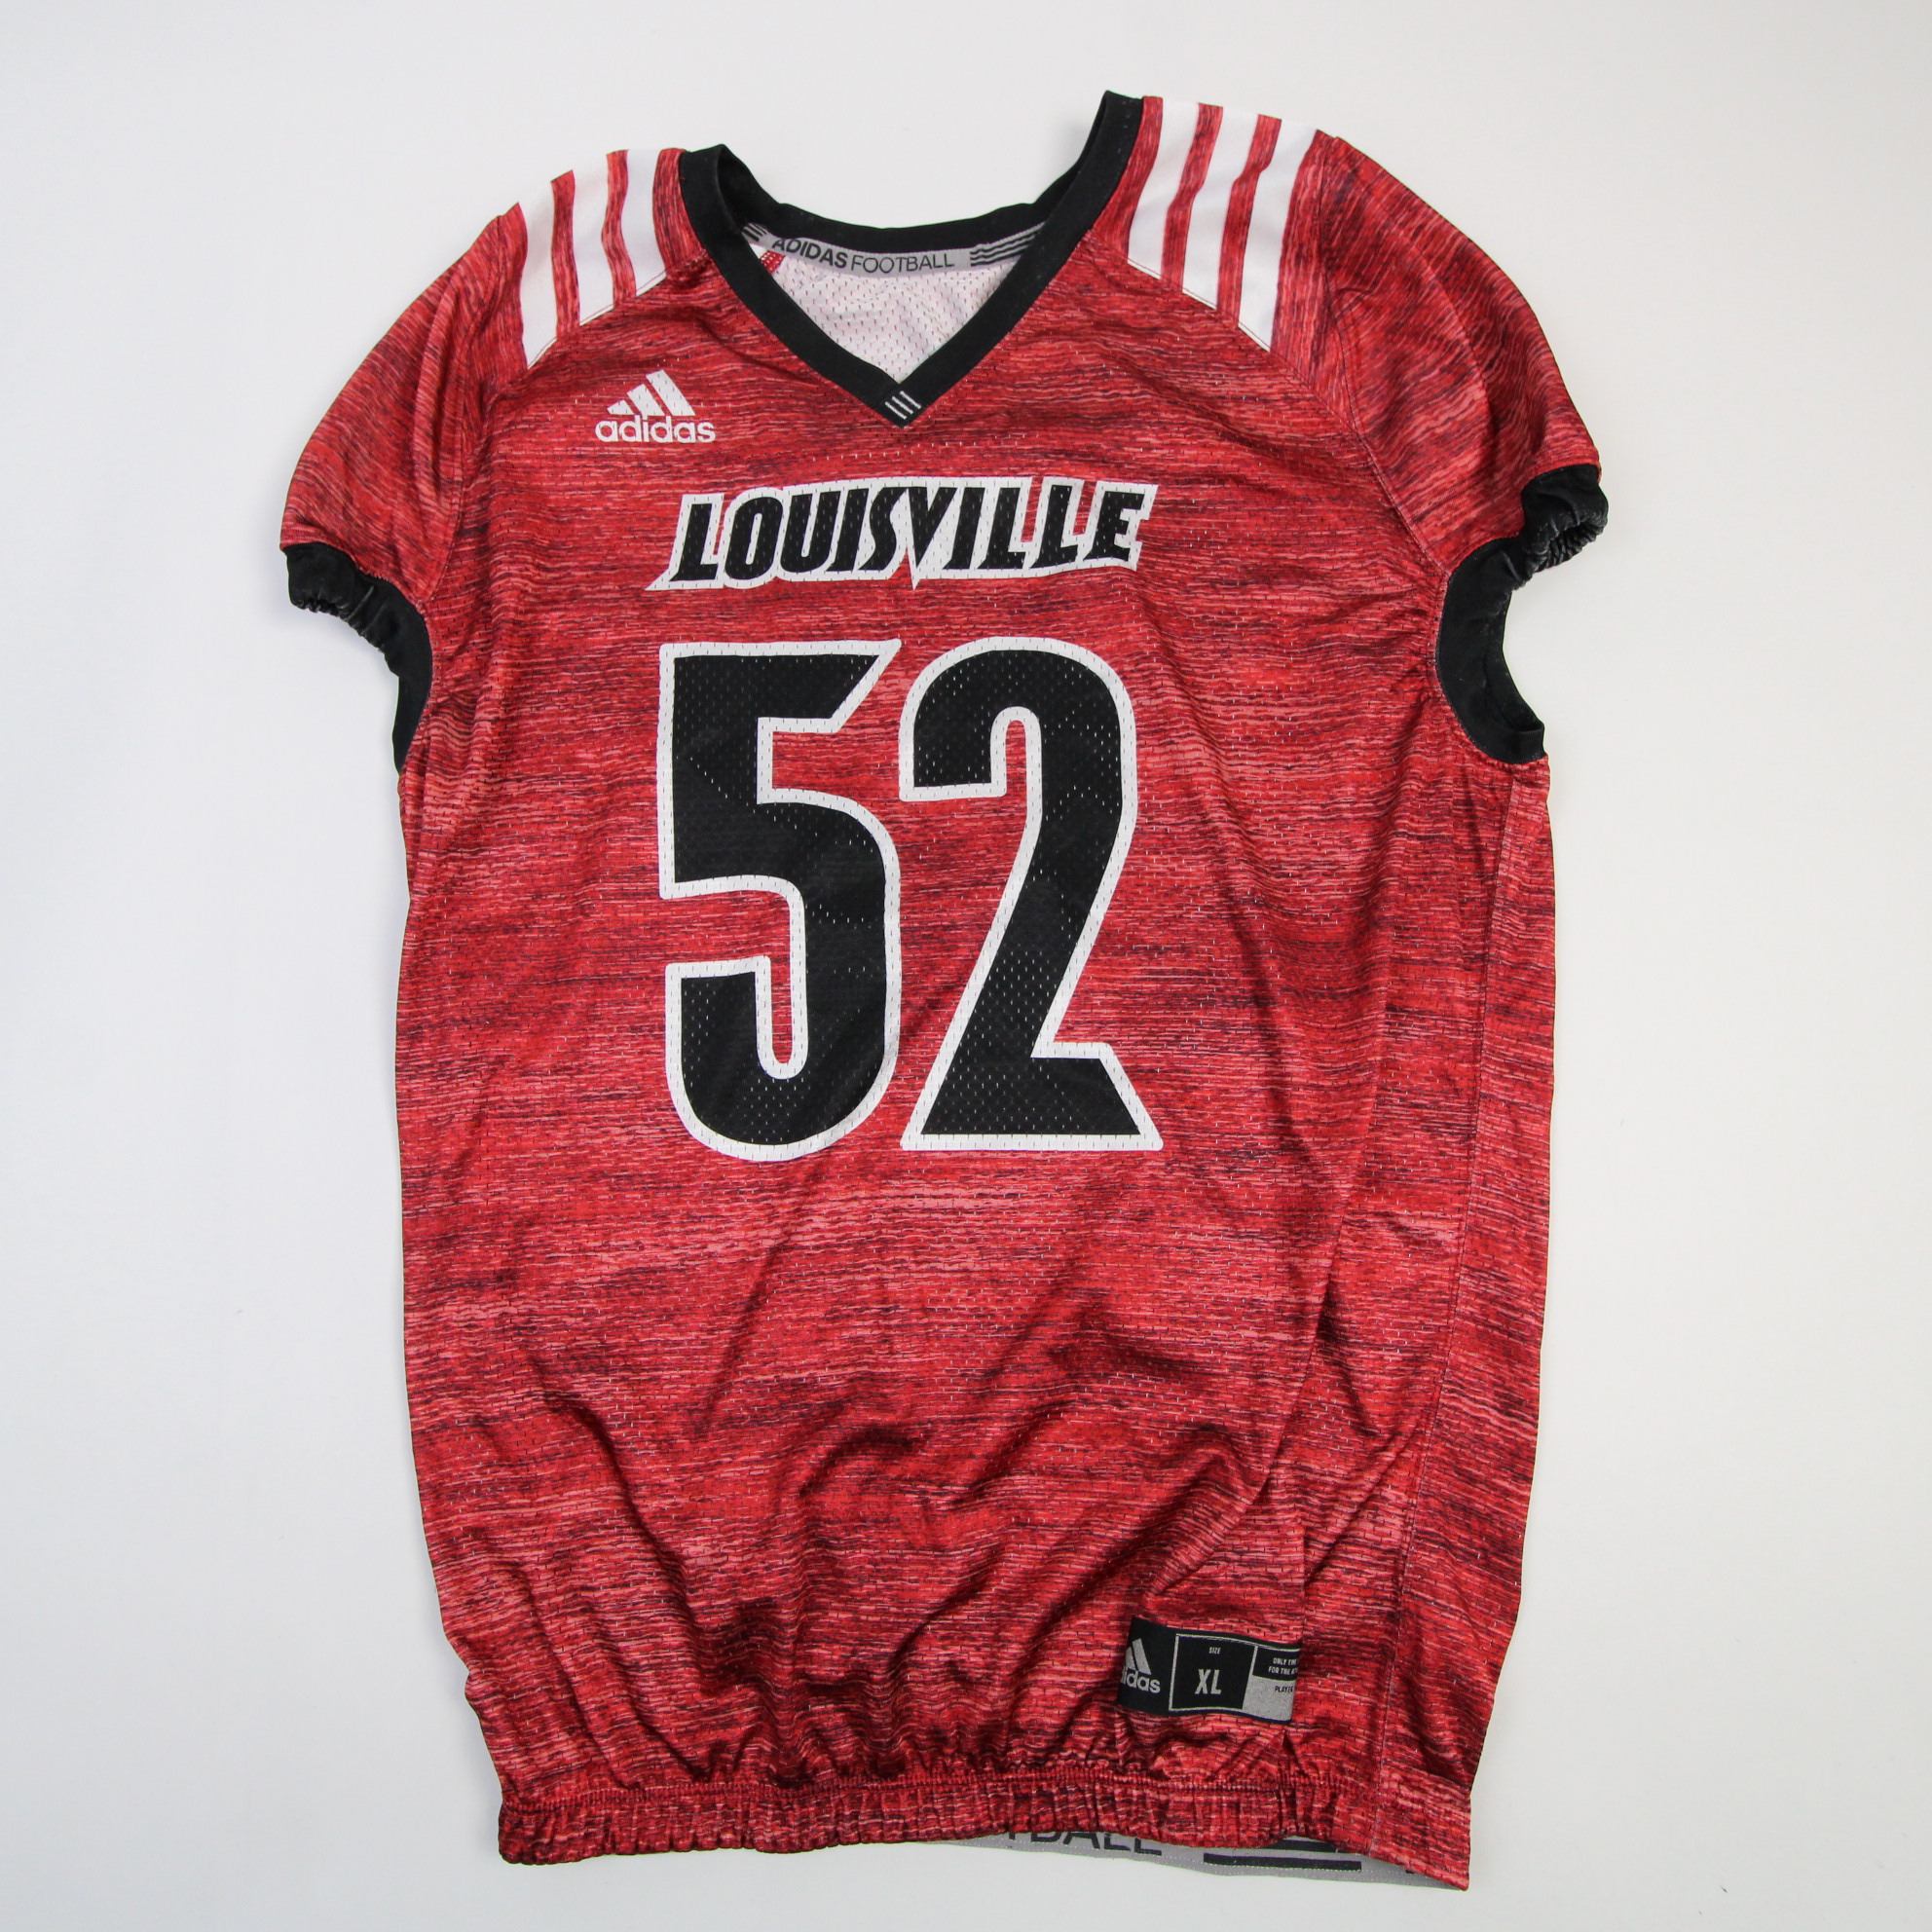 Louisville Football Shirt 